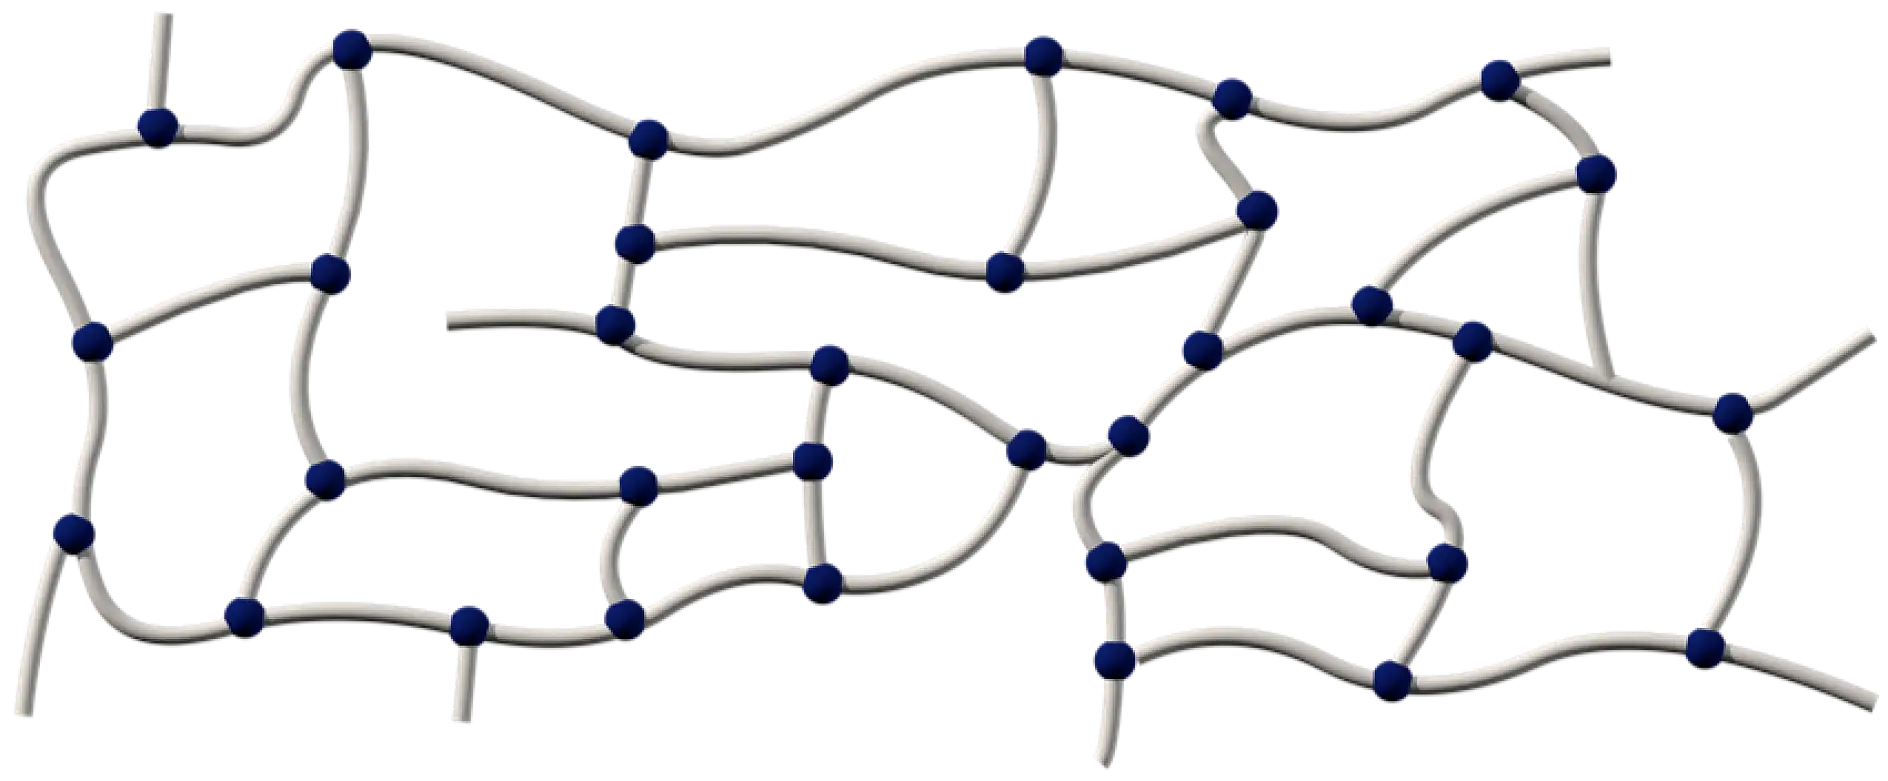 Gli adesivi acrilici sono composti da lunghe catene di polimeri reticolate con metodi diversi: chimicamente, con radiazioni UV o con indurimento con fascio di elettroni